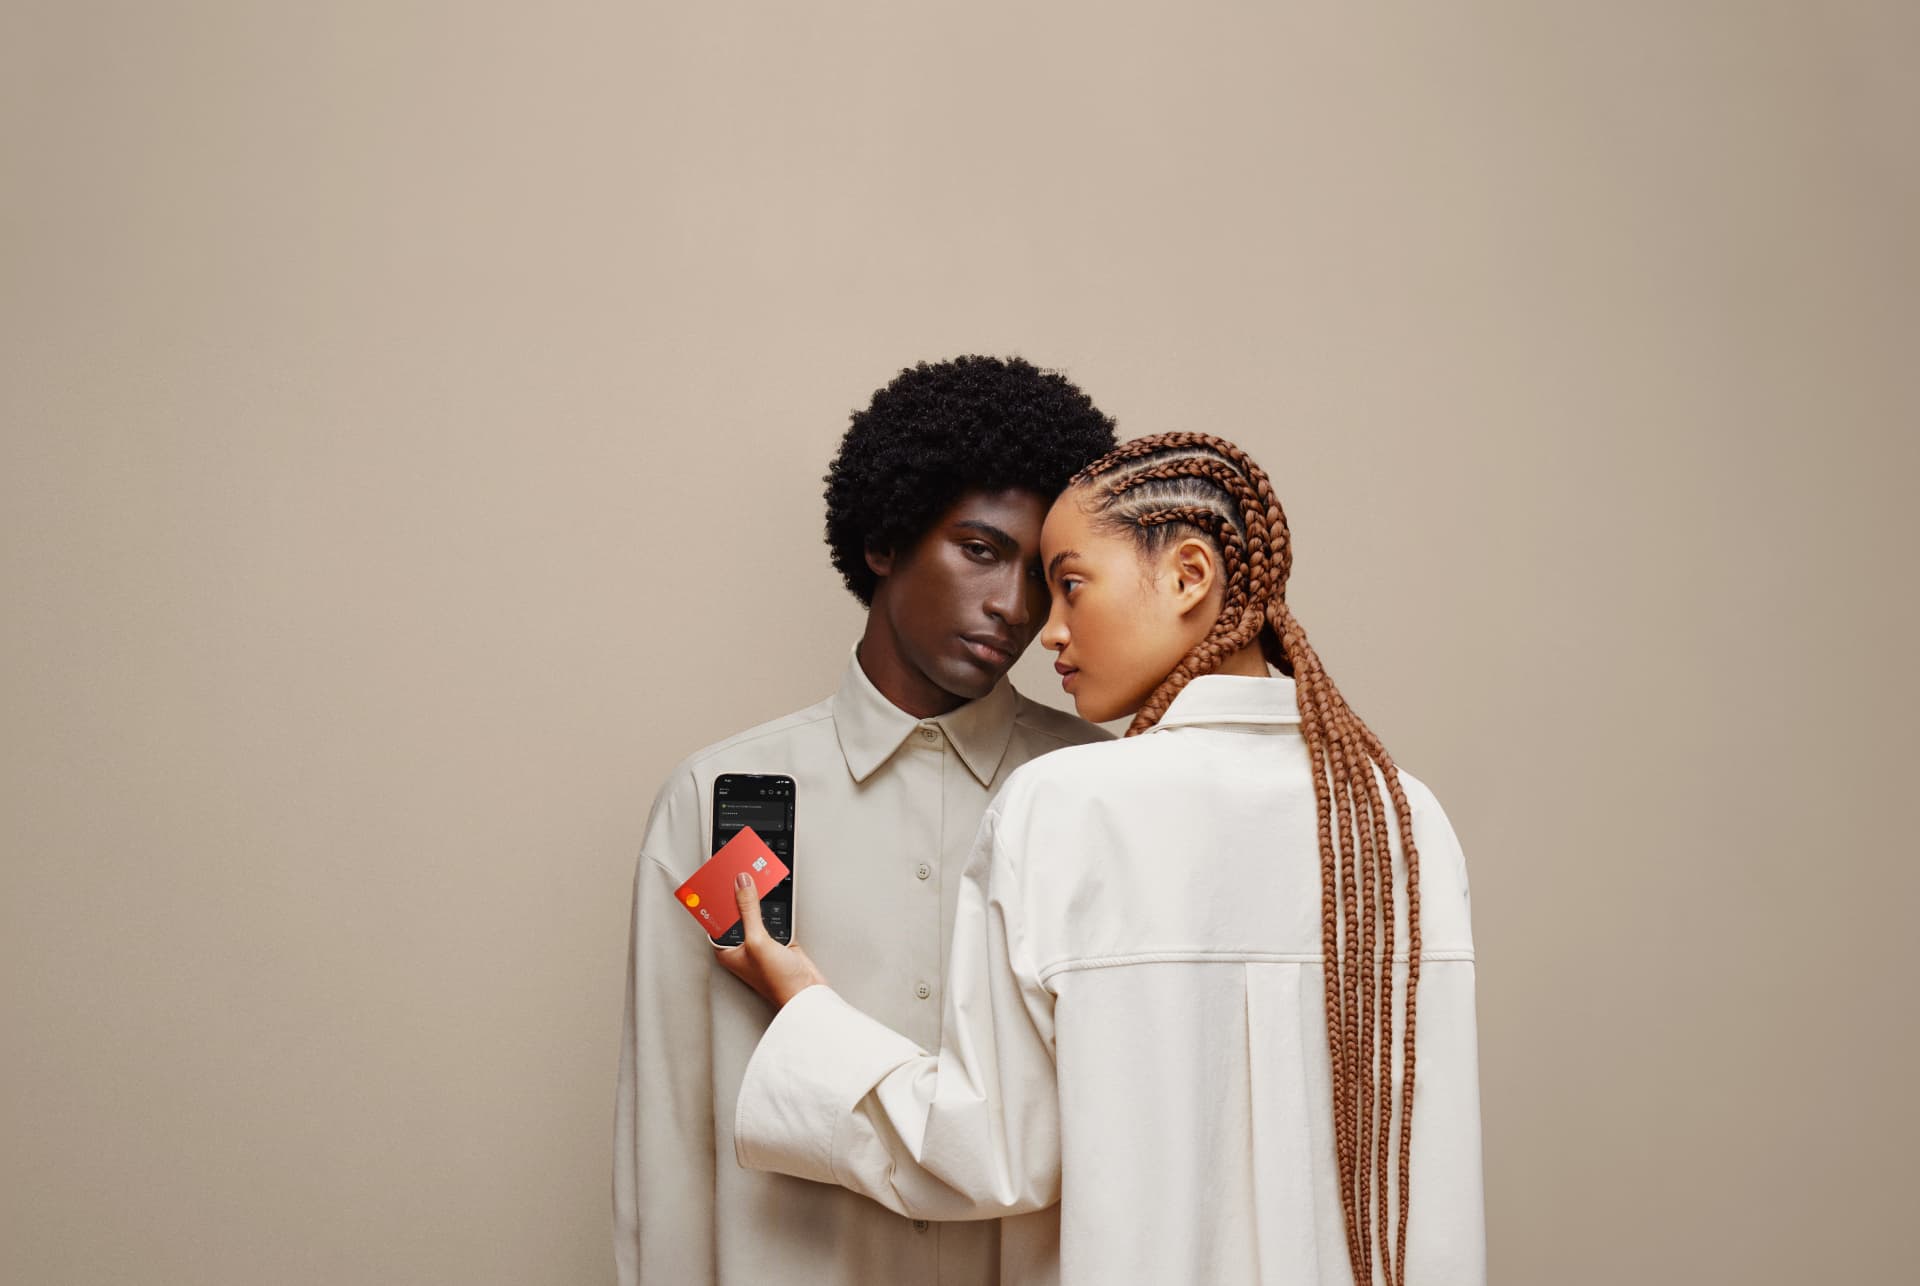 A imagem mostra um homem e uma mulher negros. A mulher está de frente para o homem, mas de costas para a camêra e olhando para a esquerda. Nas mão estão um celular e o cartão C6 Red 